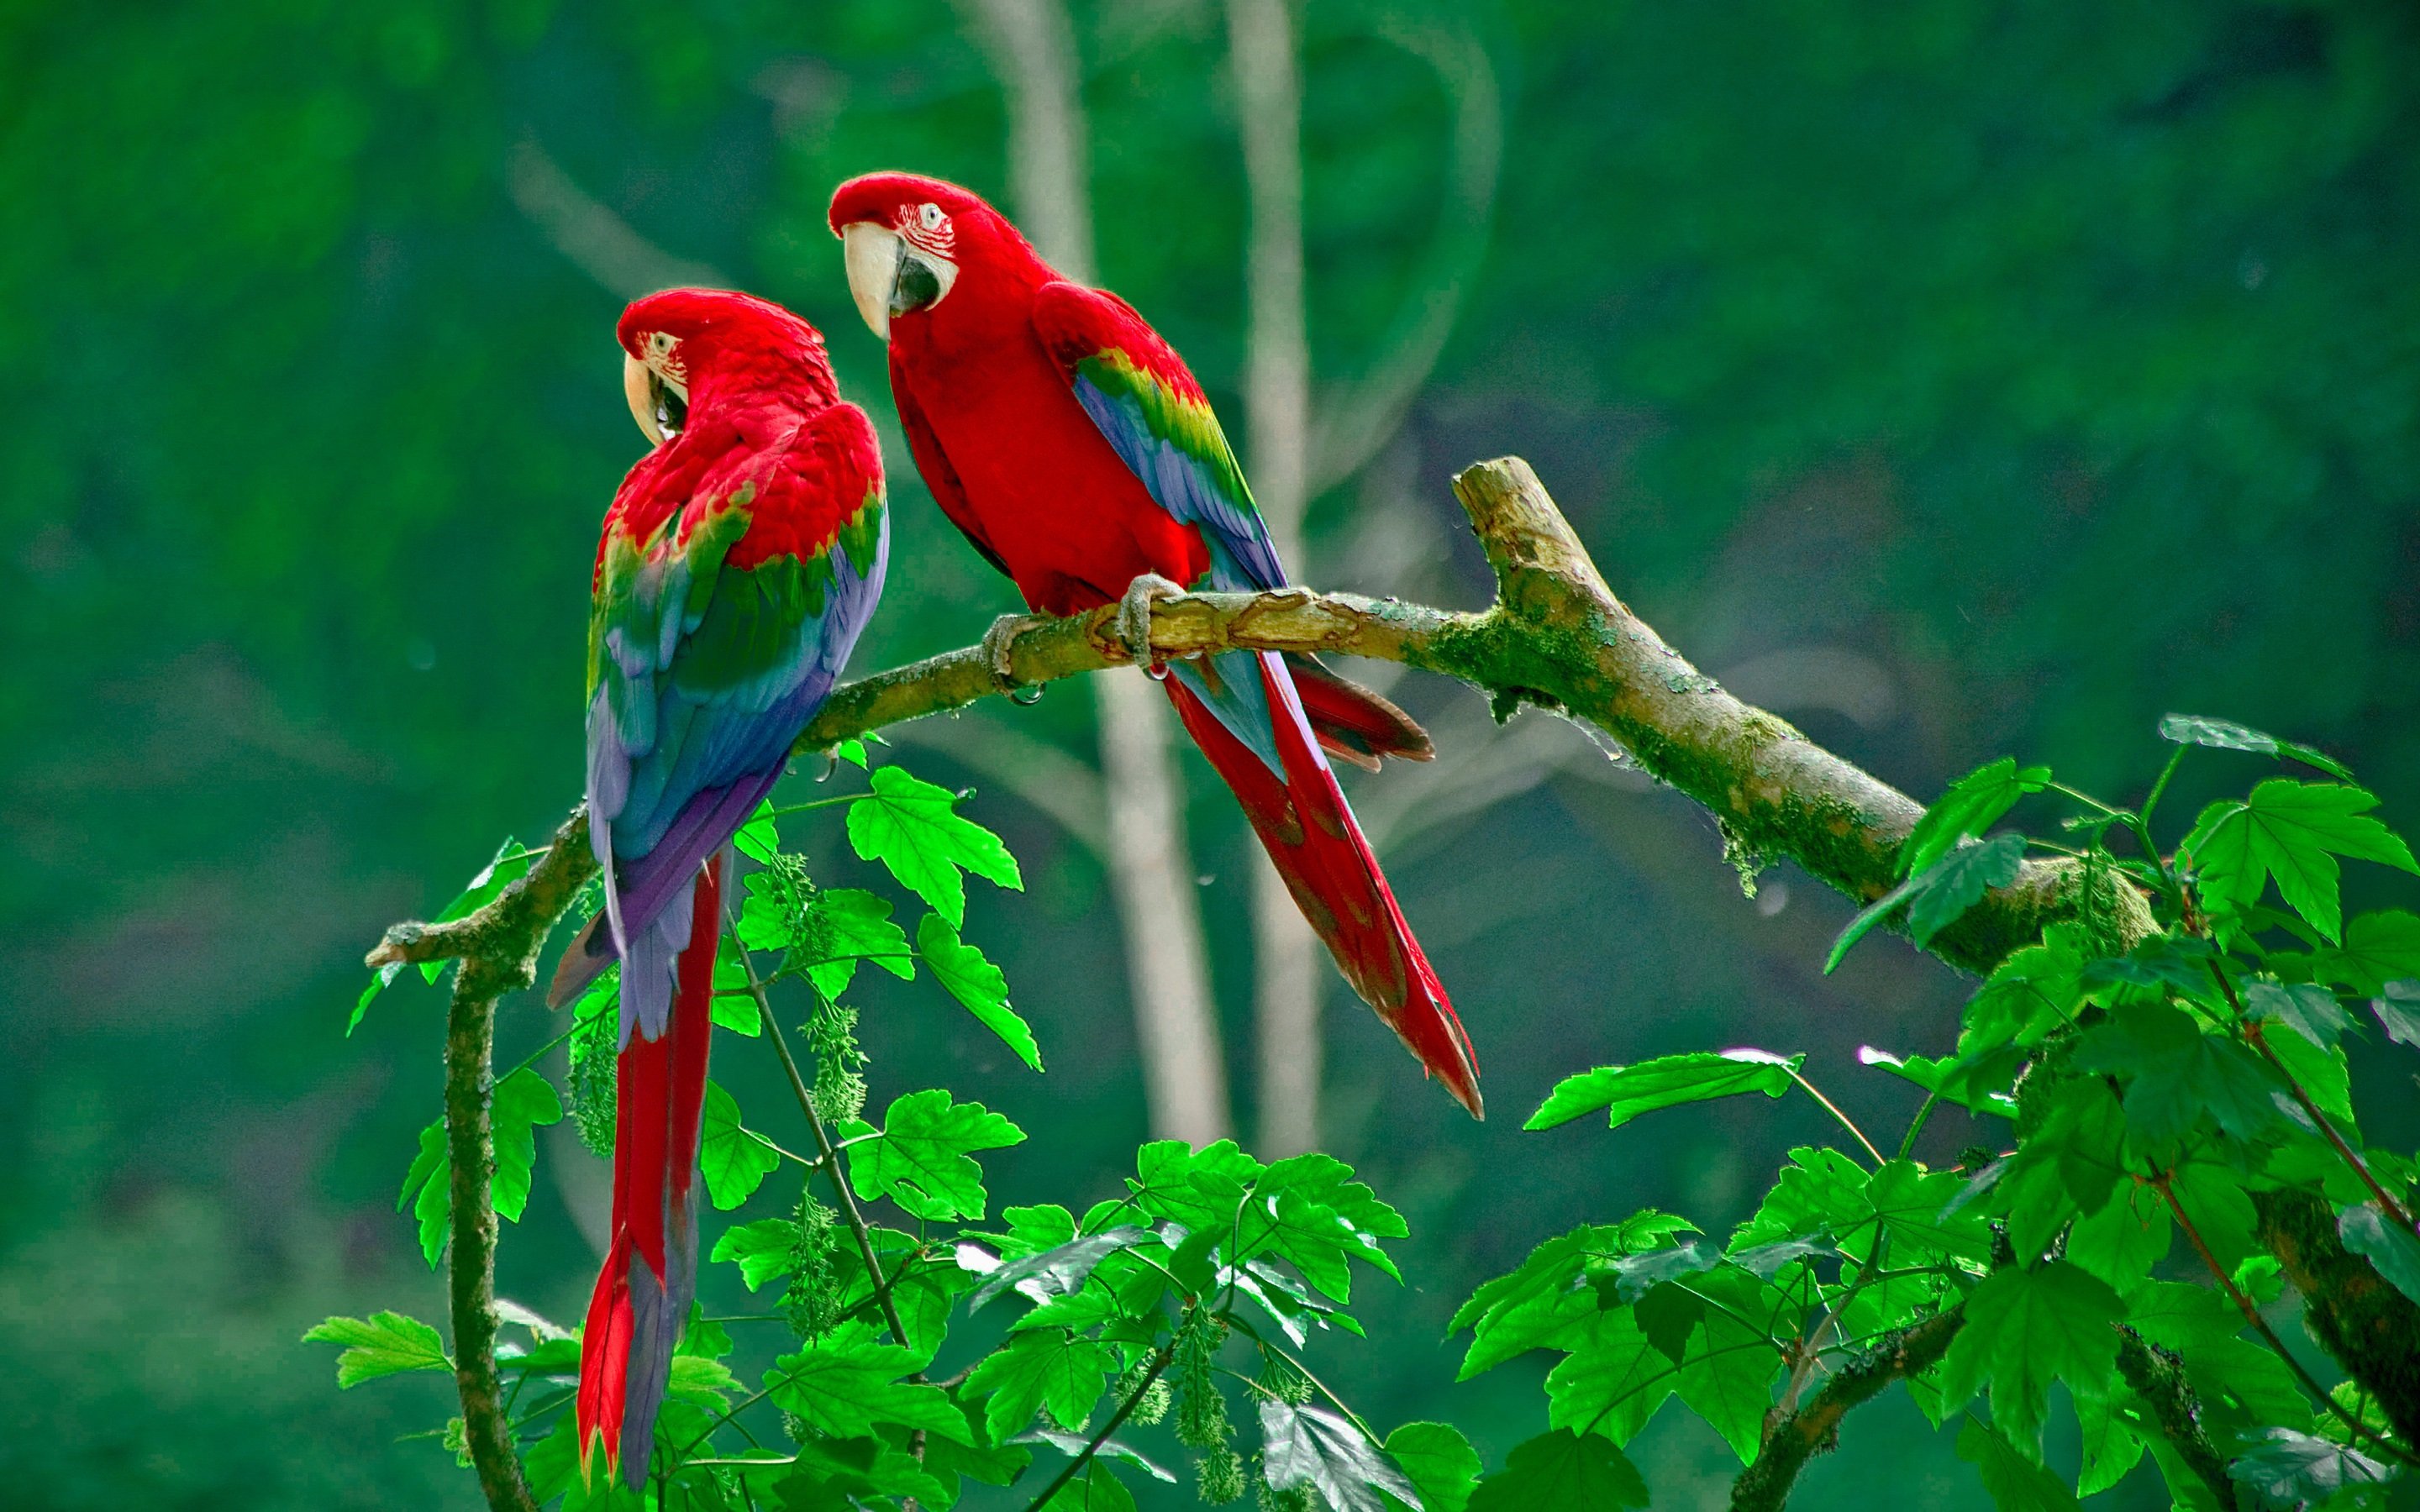 Macaw parrot bird tropical 78 wallpaper 2880x1800